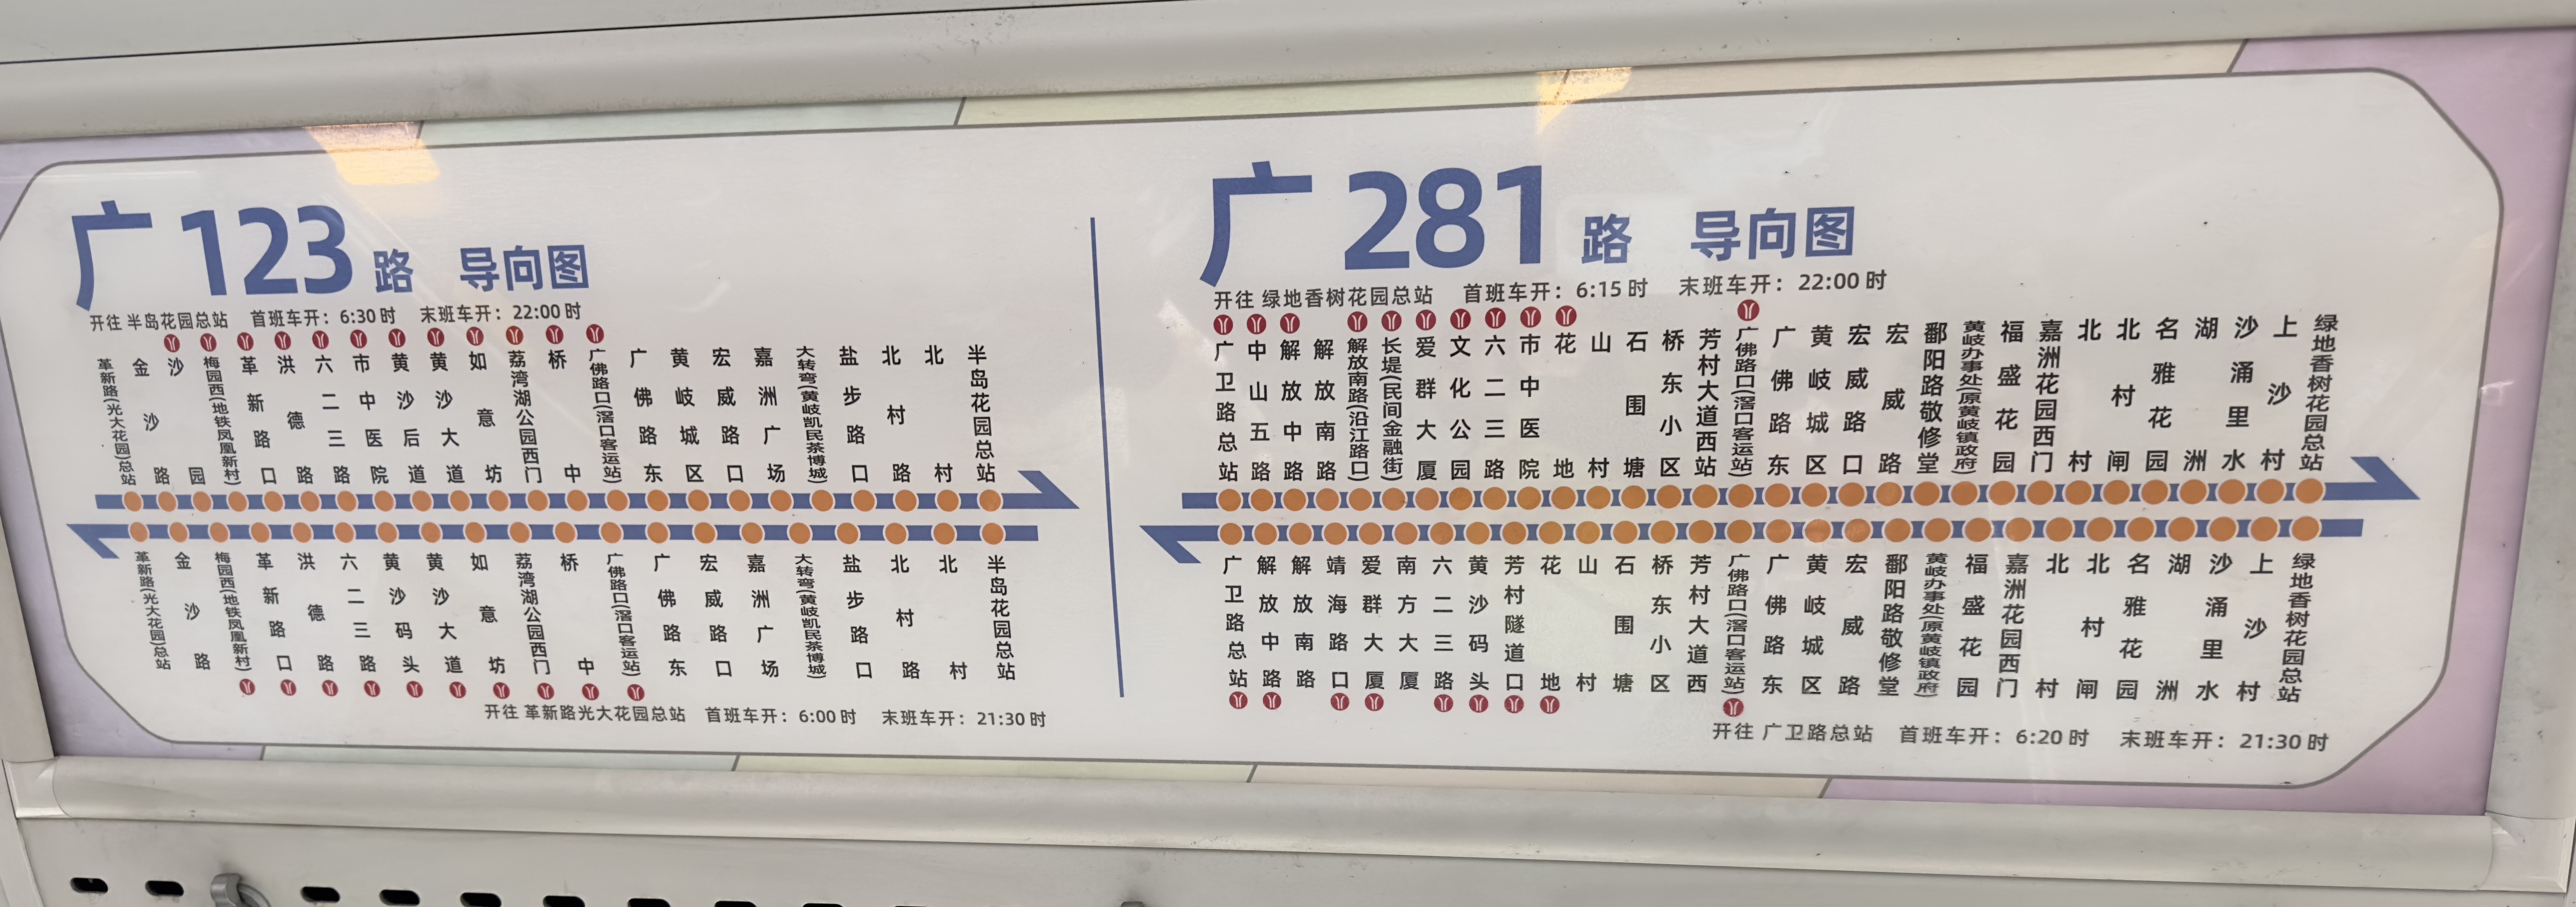 广州281路公交车路线